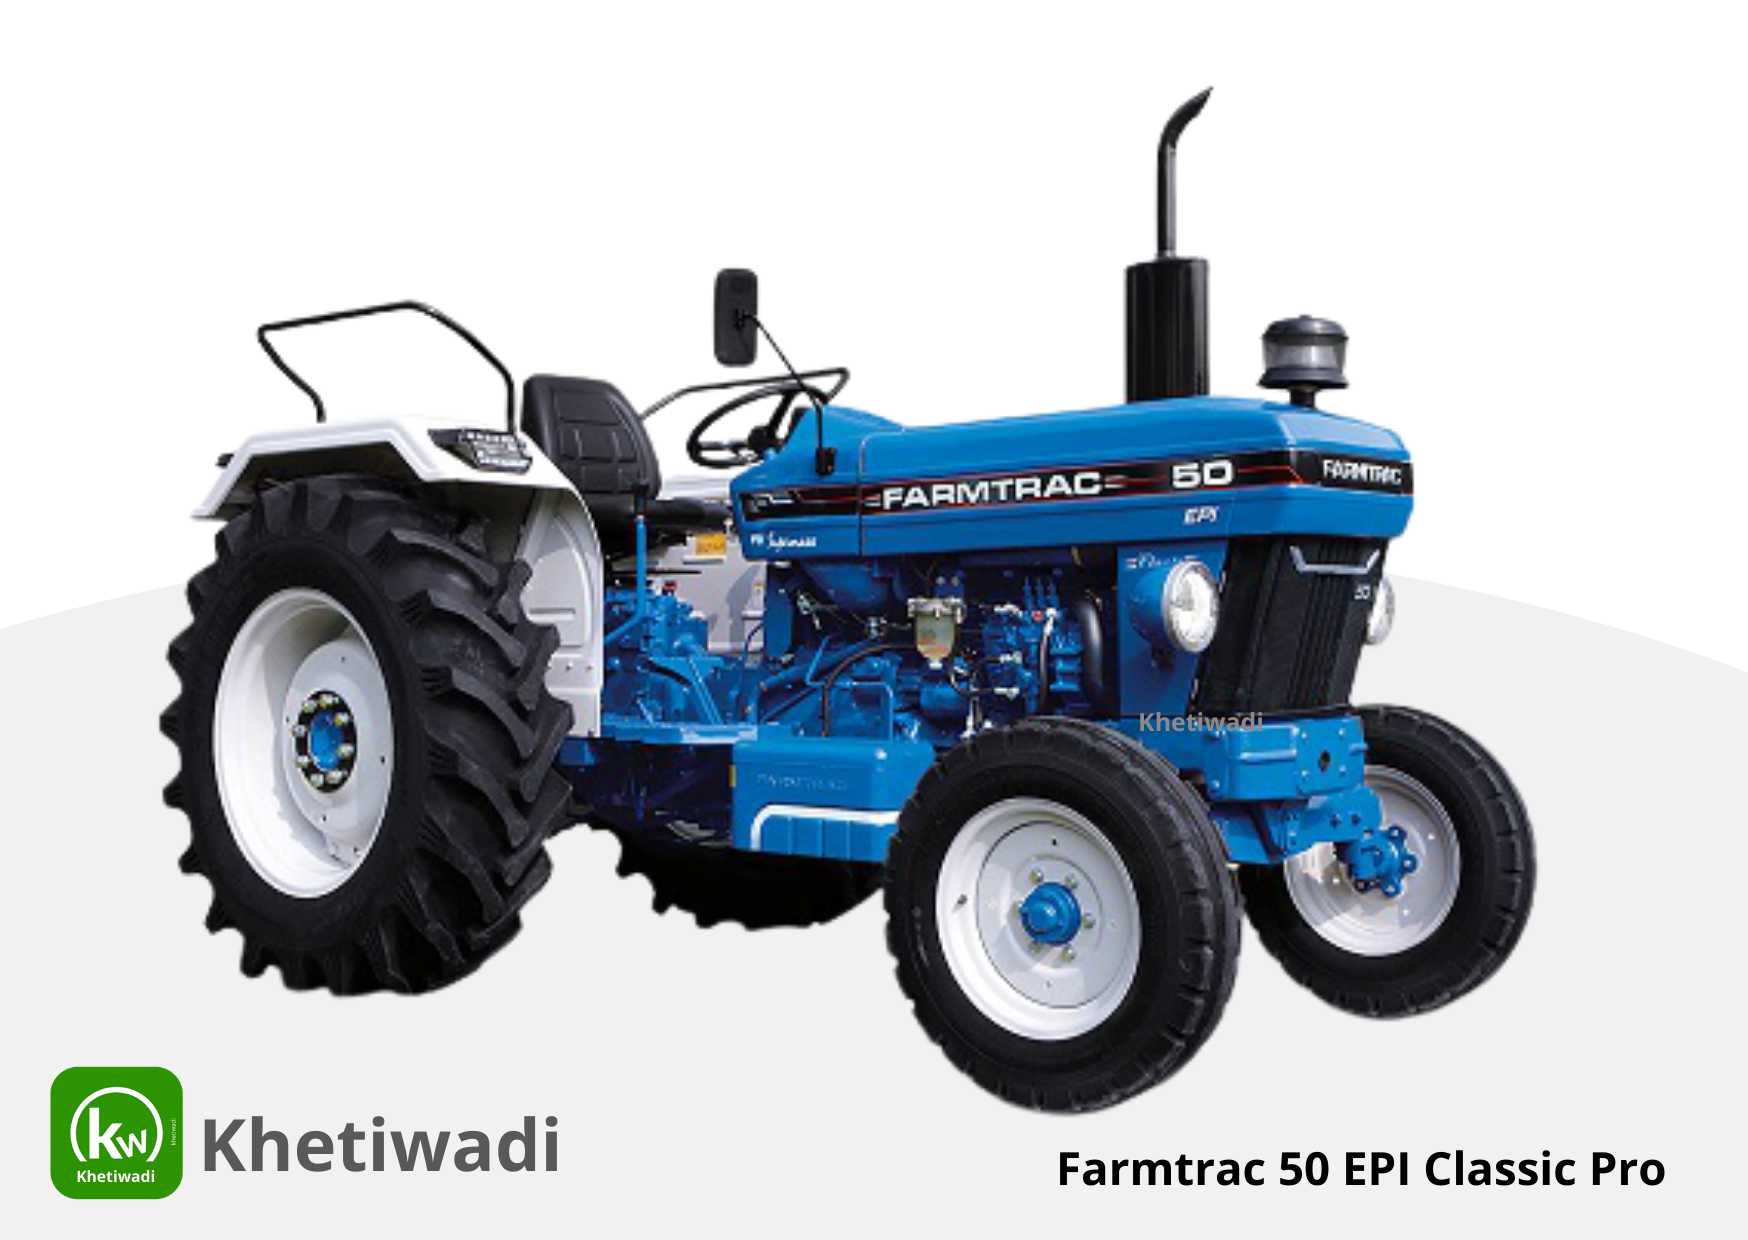 Farmtrac 50 EPI Classic Pro full detail